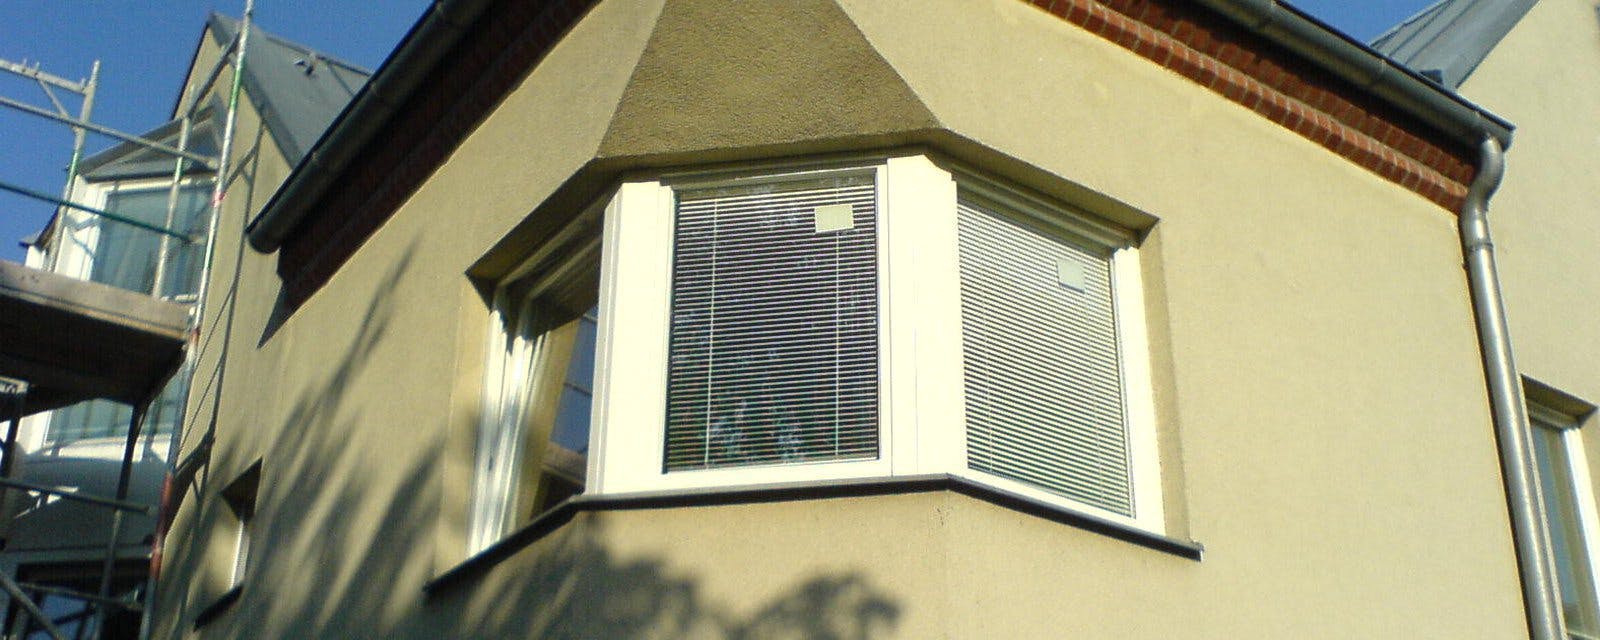 Fenster und Türen in Berlin | Beispiel 1: Fenster in Dreieckskombination passend für jedes Haus